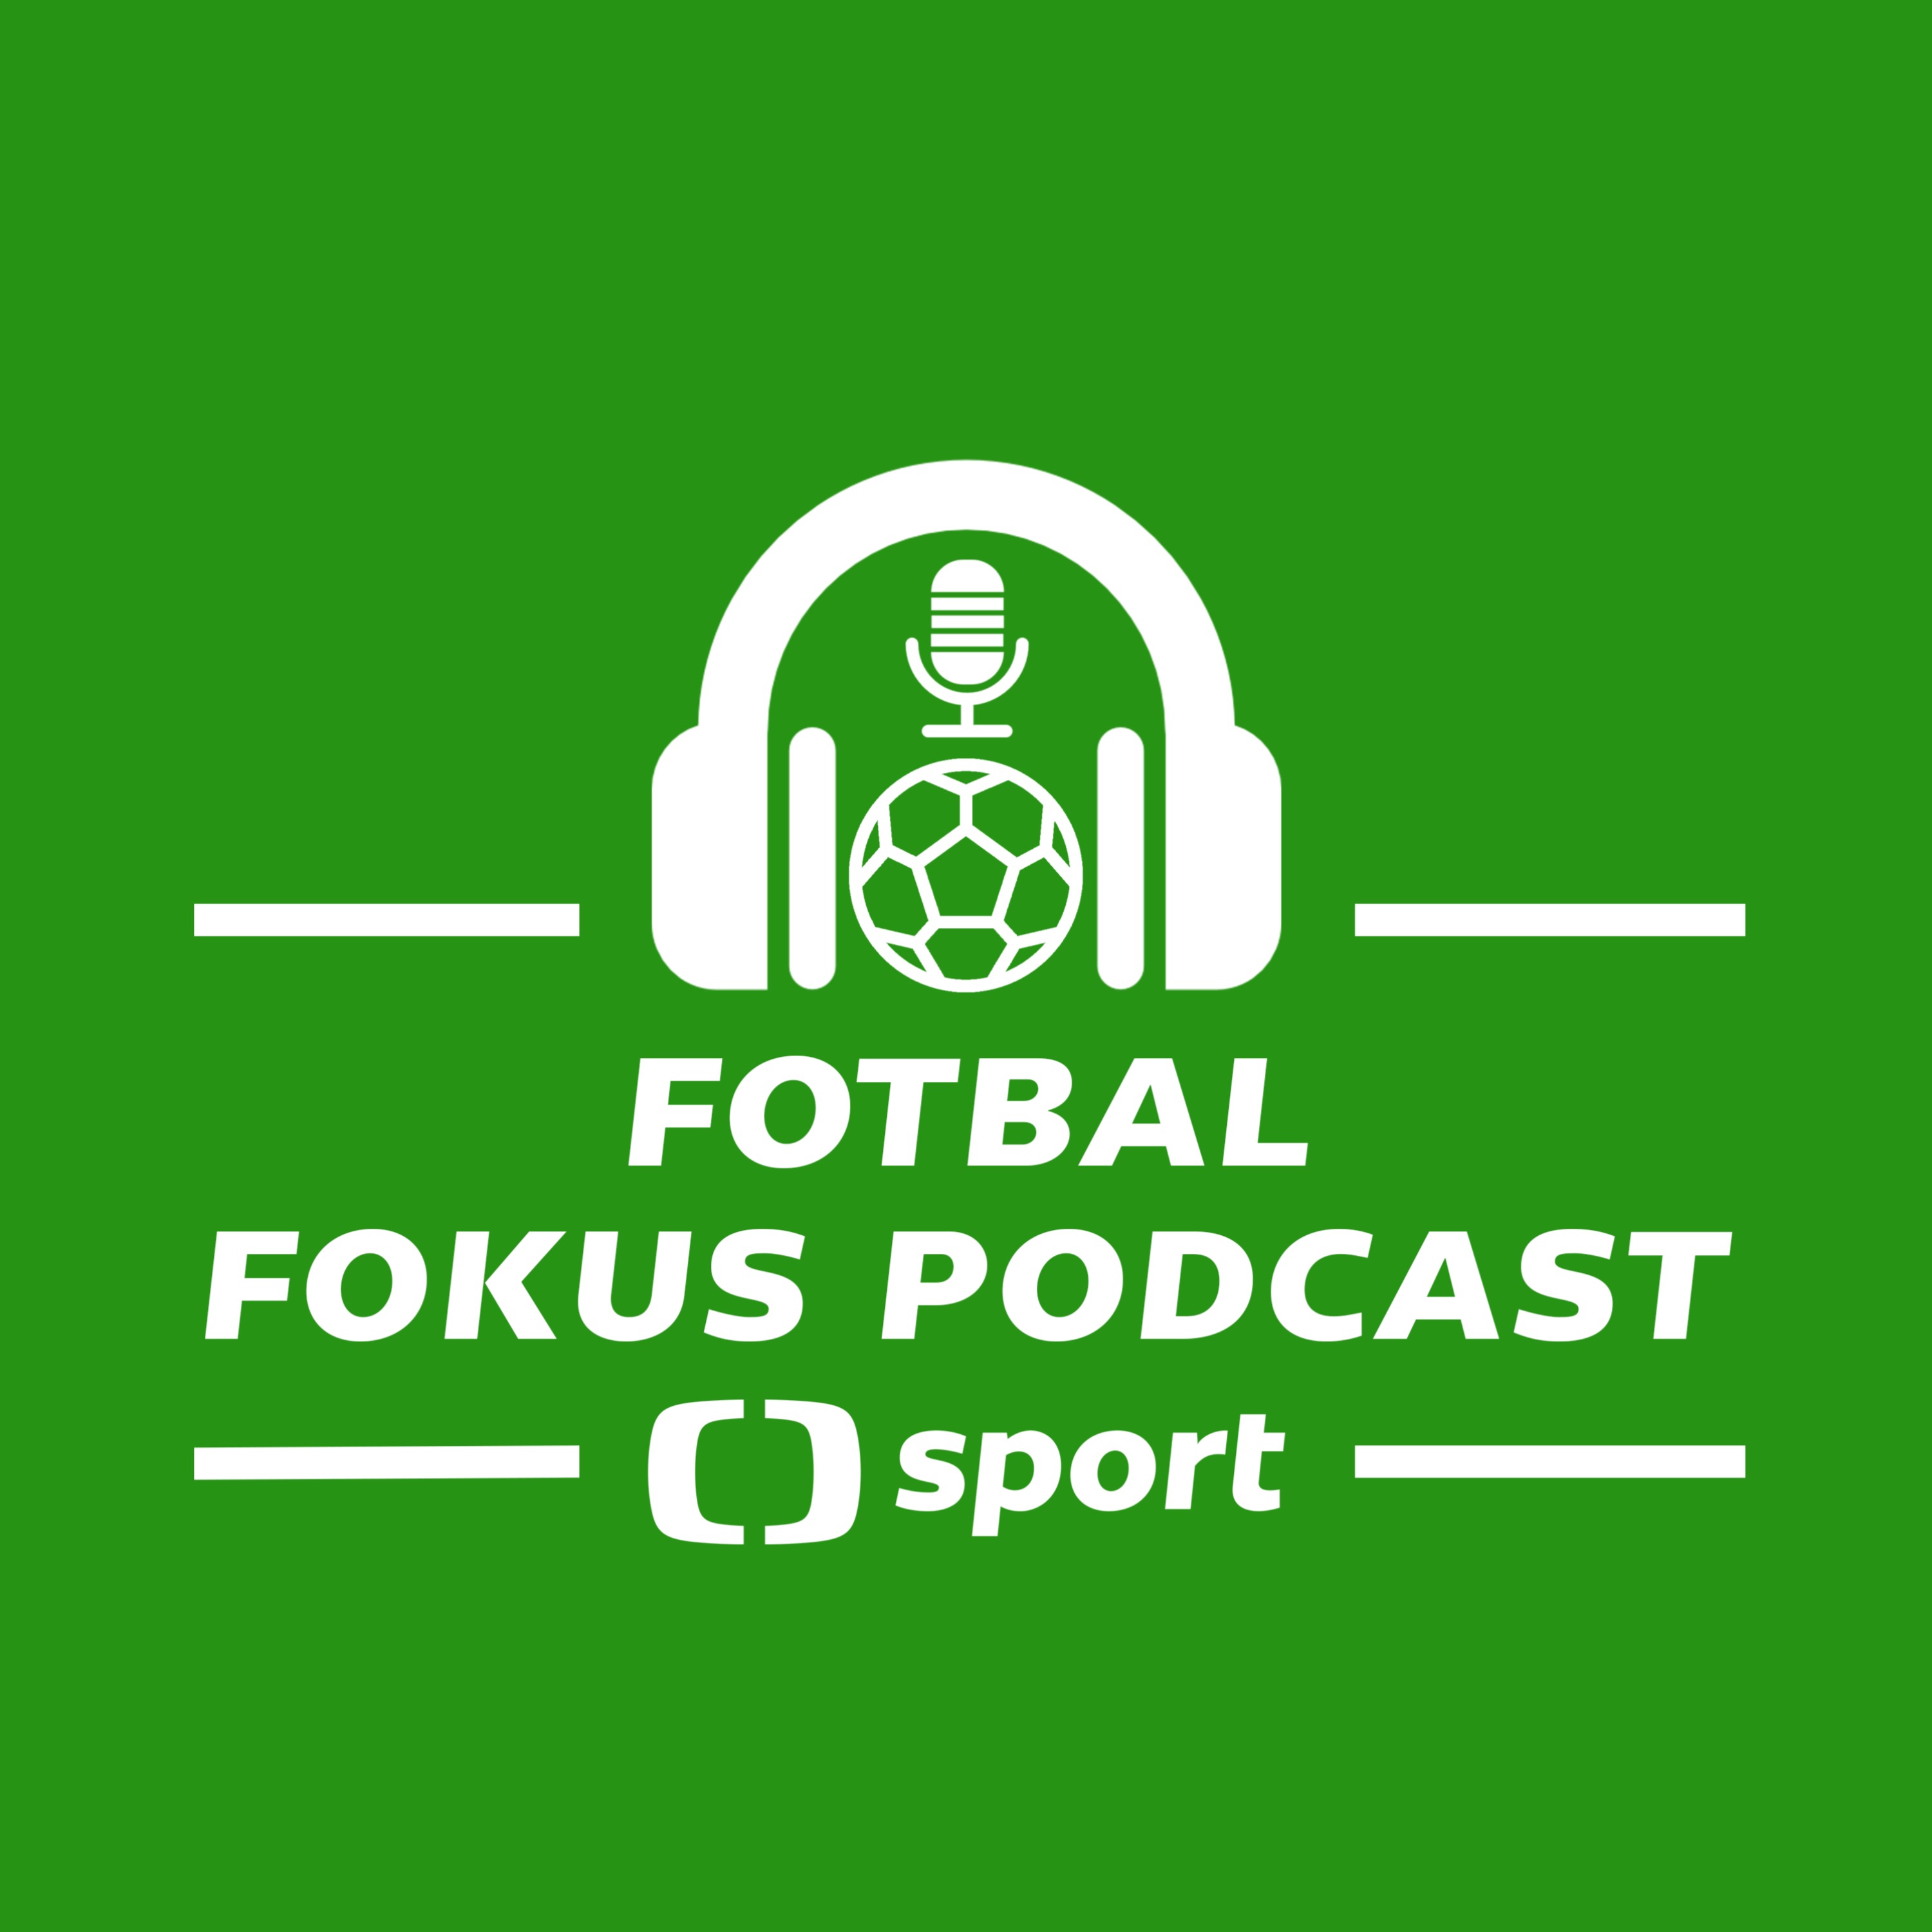 Fotbal fokus podcast: Zvolila Sparta z dua Pavelka, Conde správně a měla by reprezentace přestat hrát?